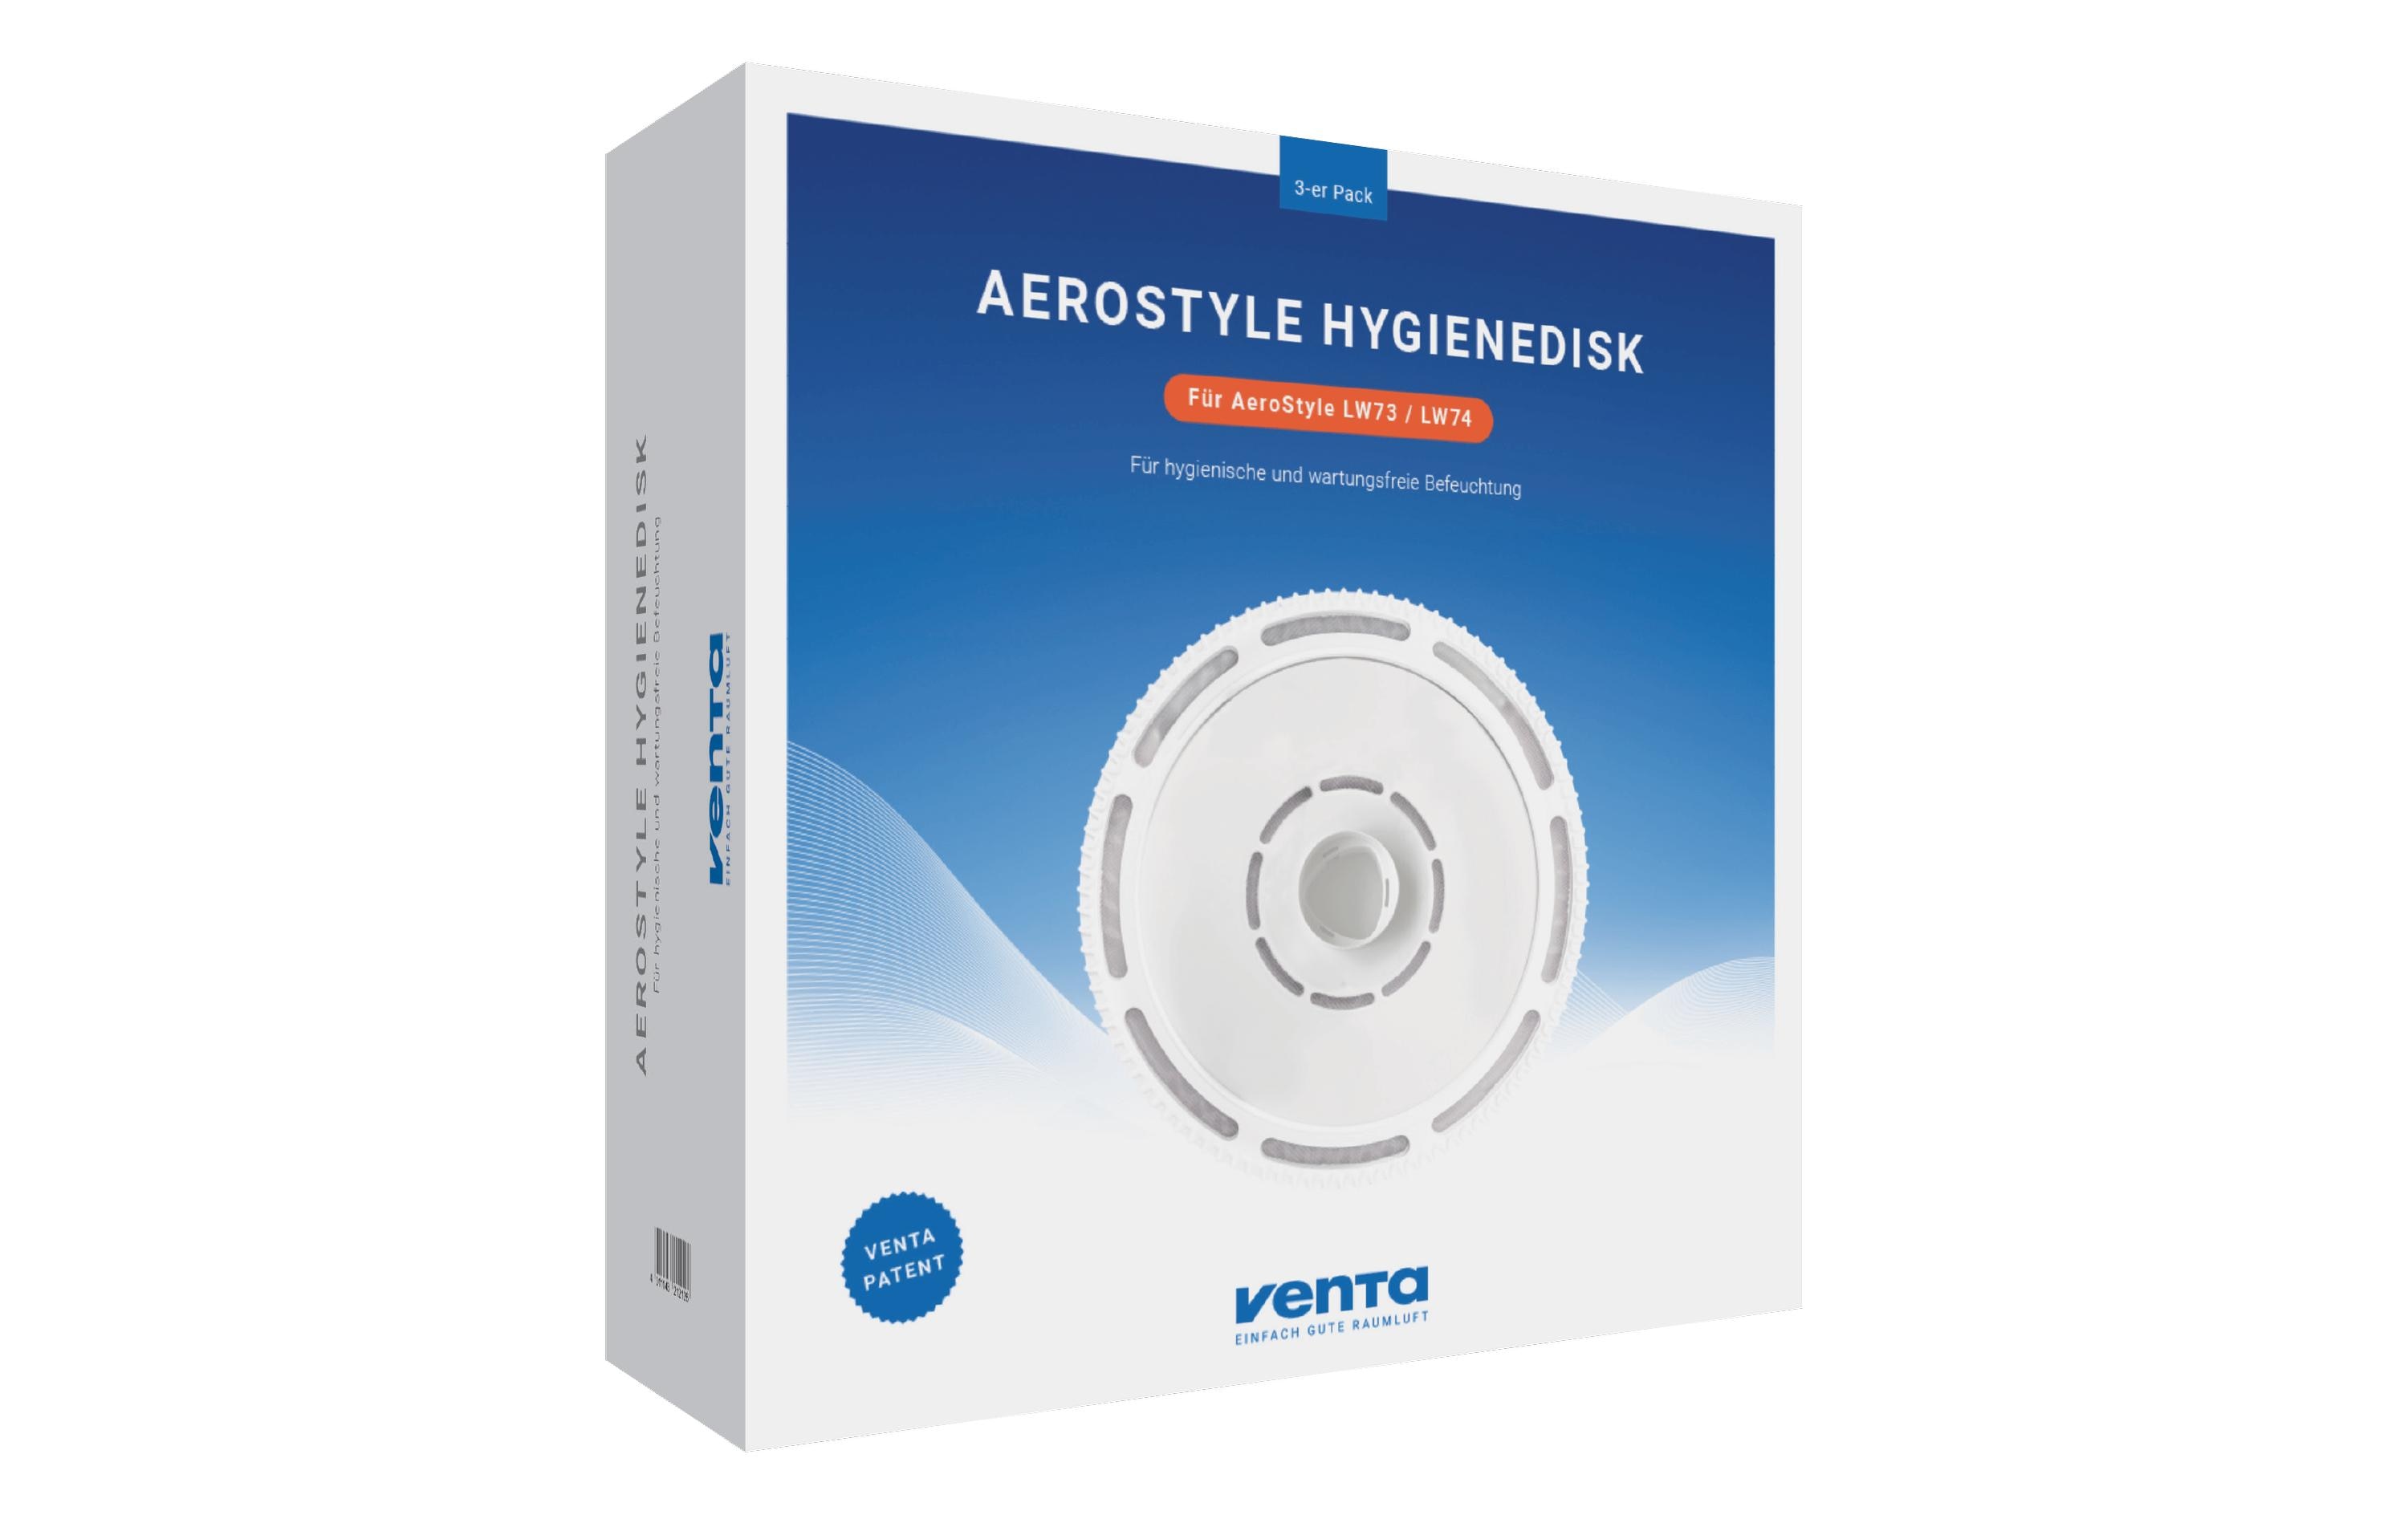 Venta Luftwäscher Hygienedisk AeroStyle 3er